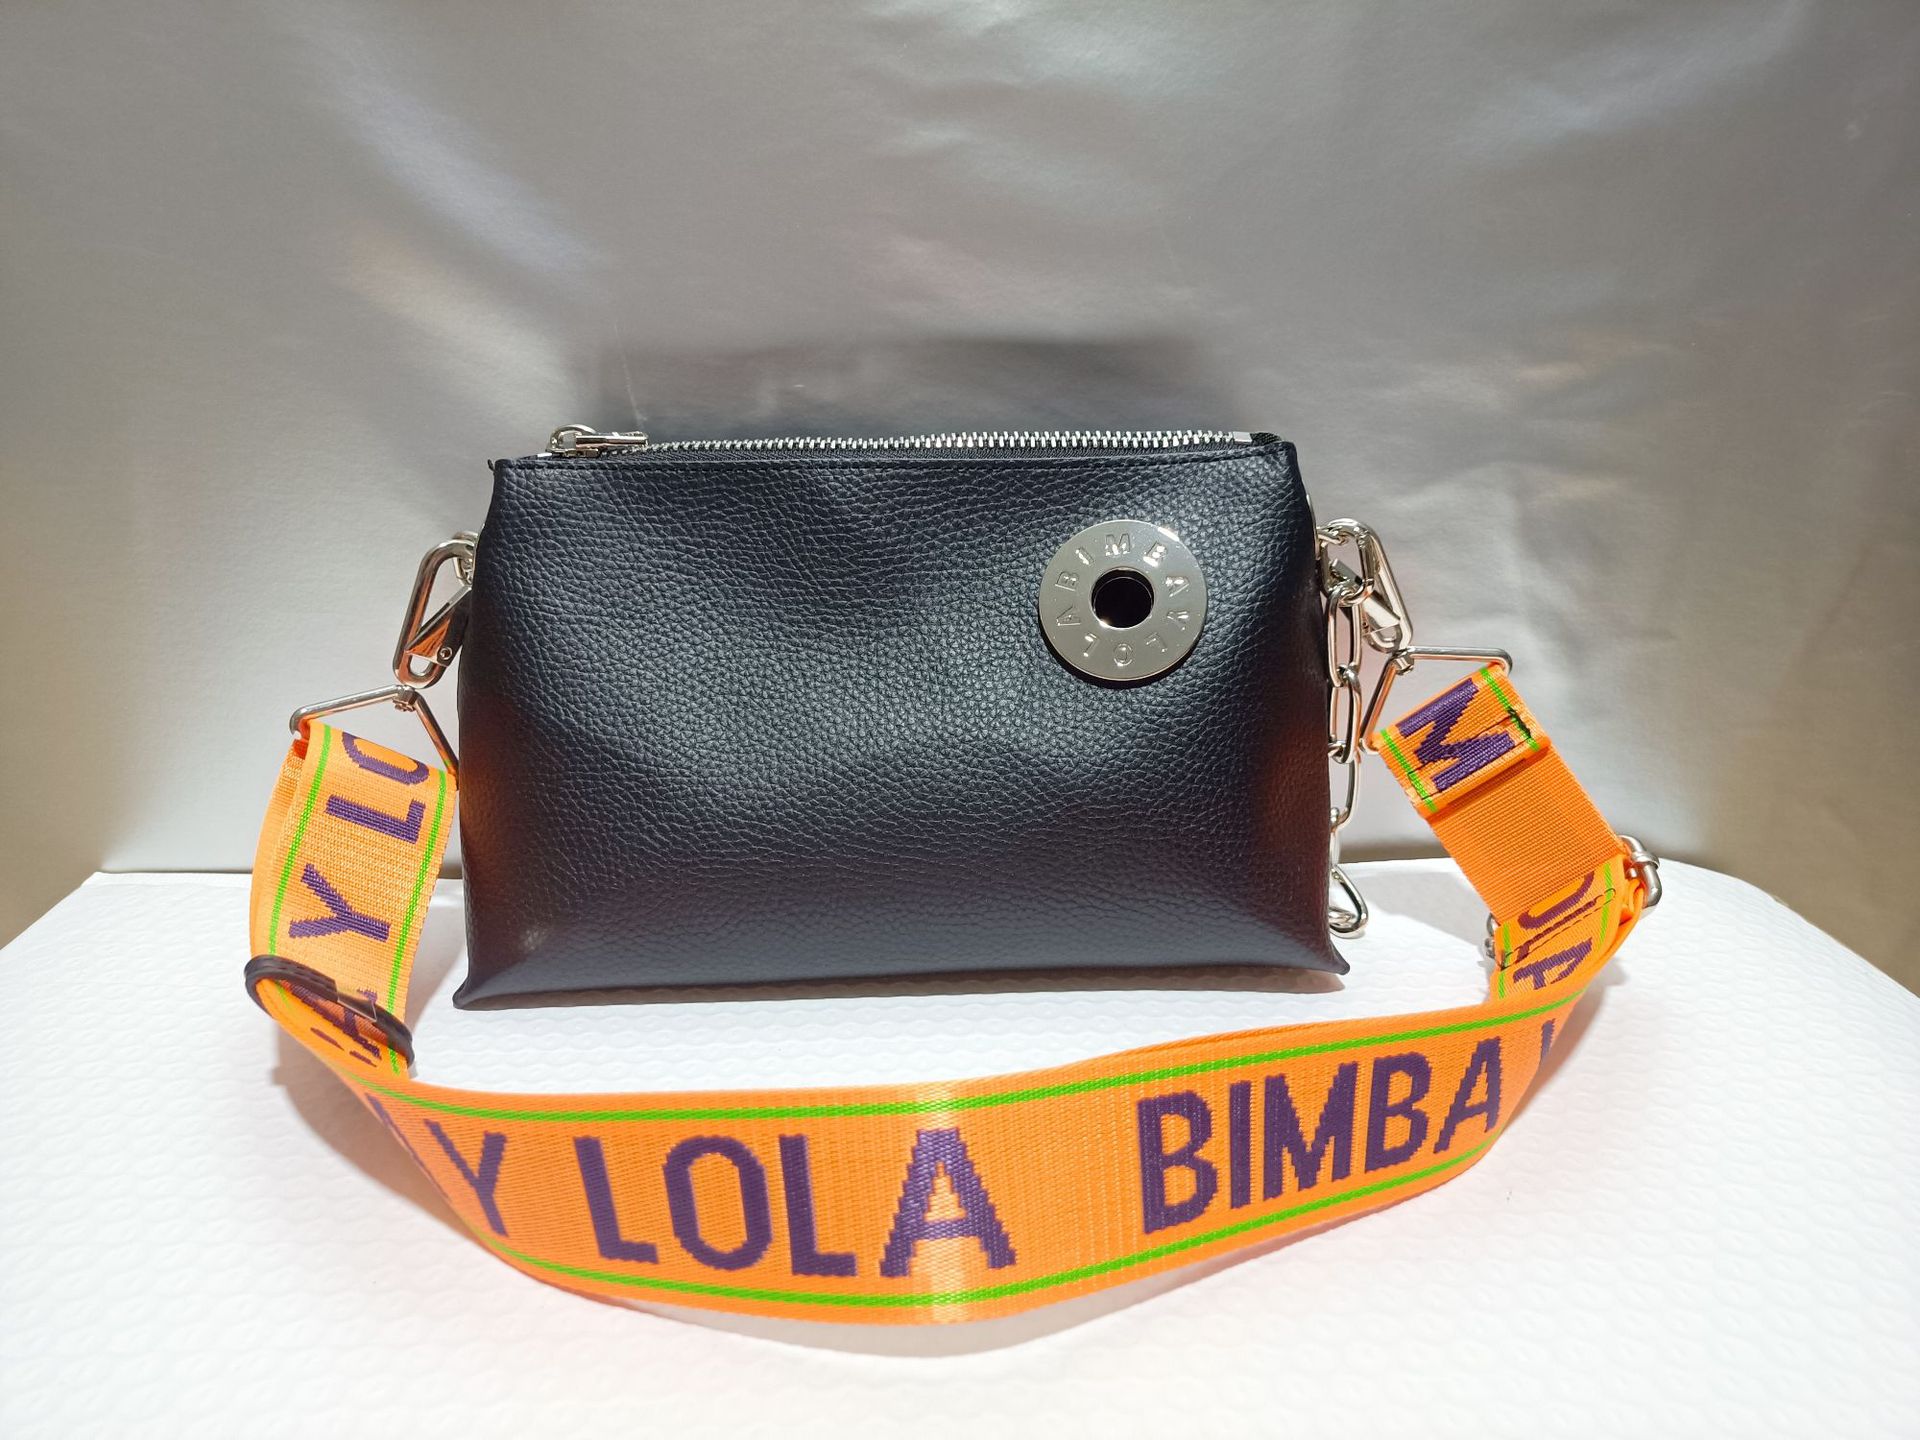 厂家直销bimba y lola西班牙新款女包铁链包女士手提包女斜挎包